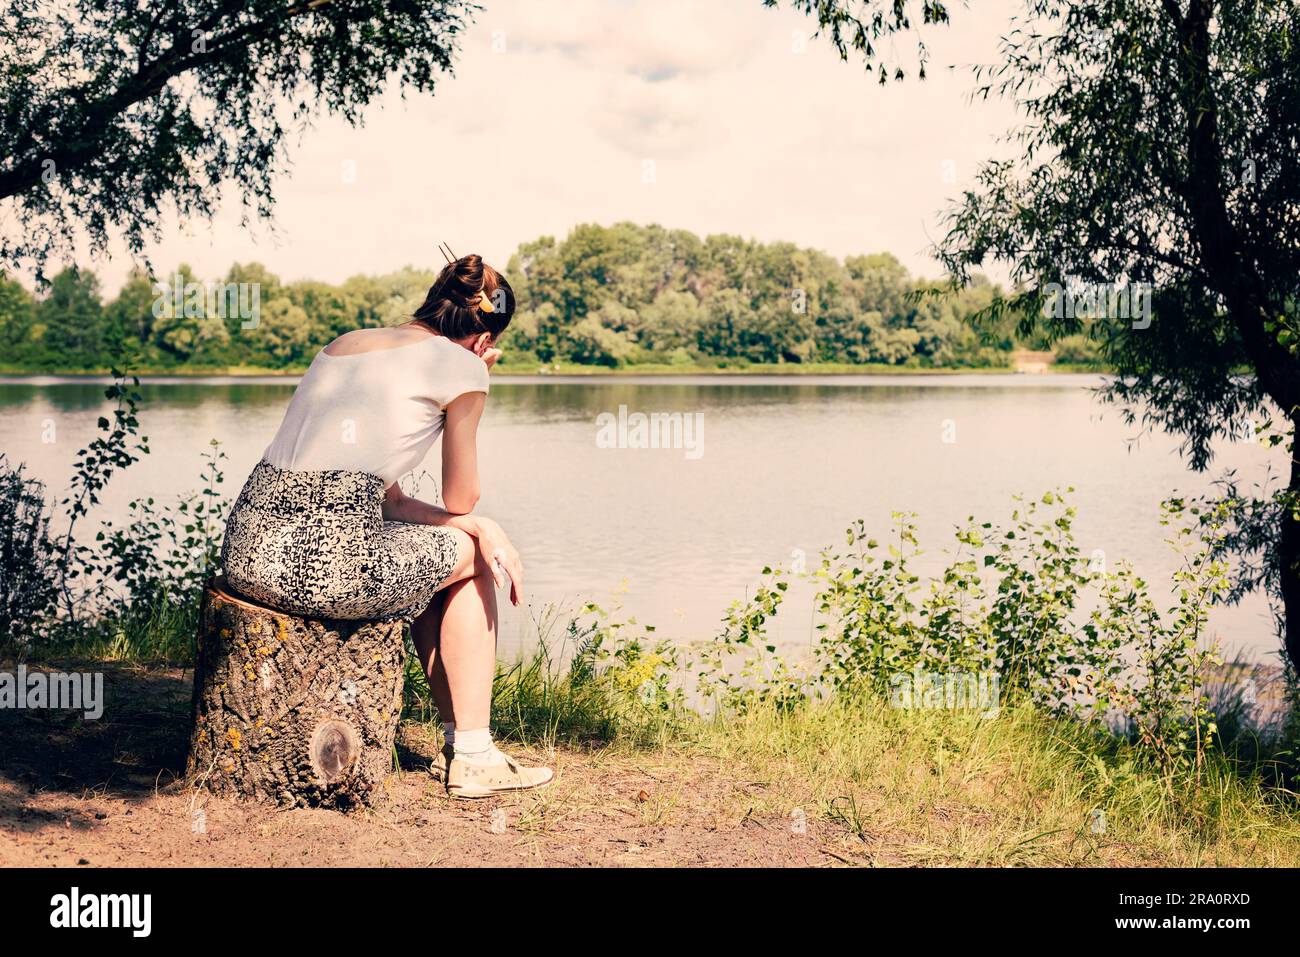 Eine traurige und nostalgische Frau sitzt in der Nähe des Dnieper-Flusses in Kiew, Ukraine. Sie denkt, während sie zusieht oder weit in der Ferne beobachtet Stockfoto